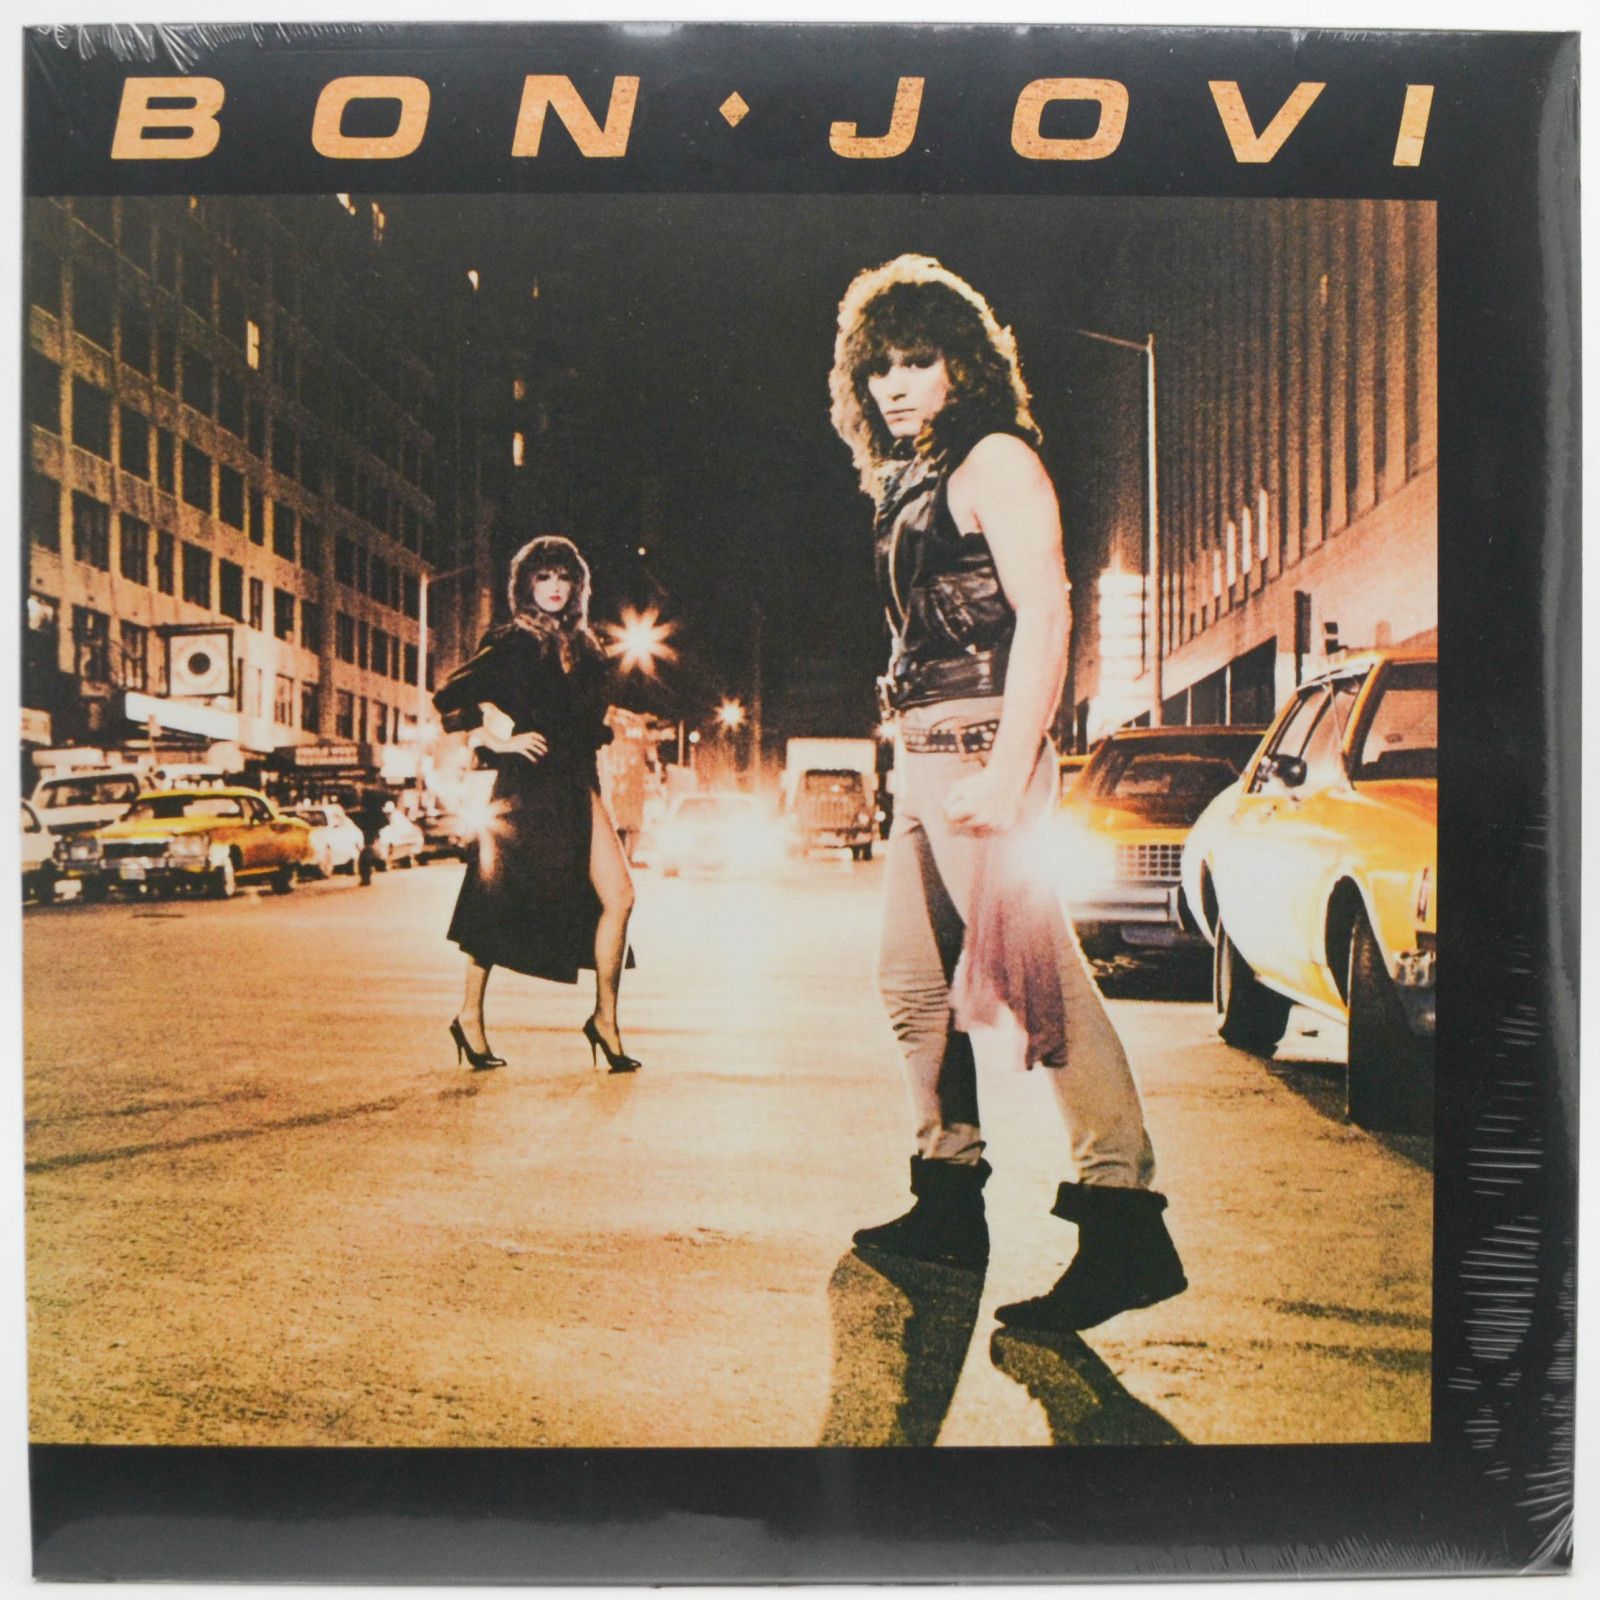 Bon Jovi — Bon Jovi, 1984